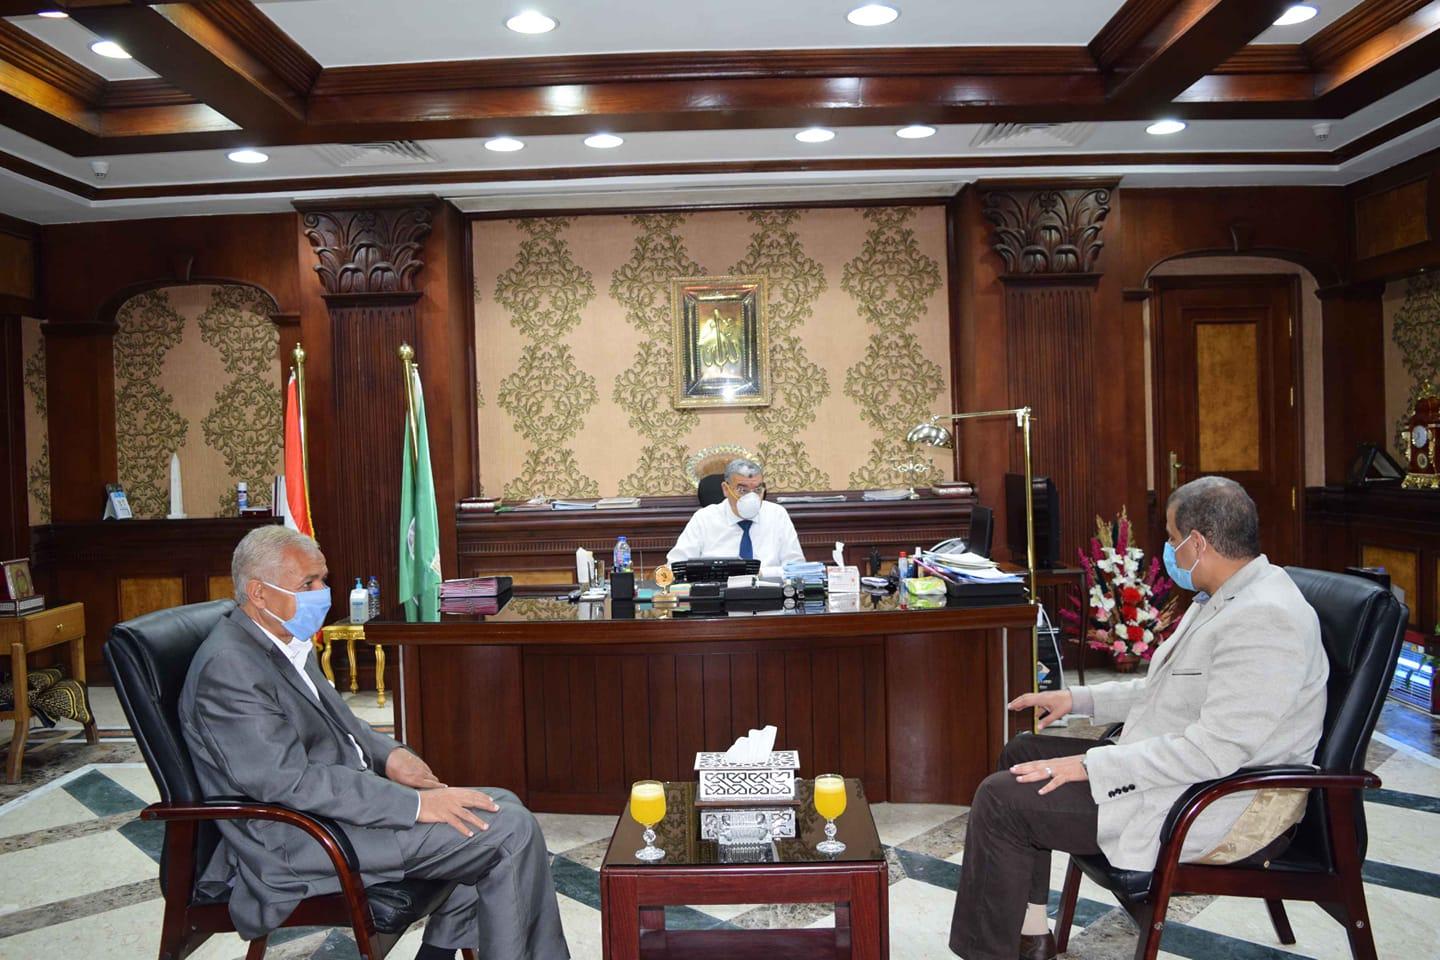   محافظ المنيا يستقبل السكرتير العام الجديد لمباشرة مهام عمله